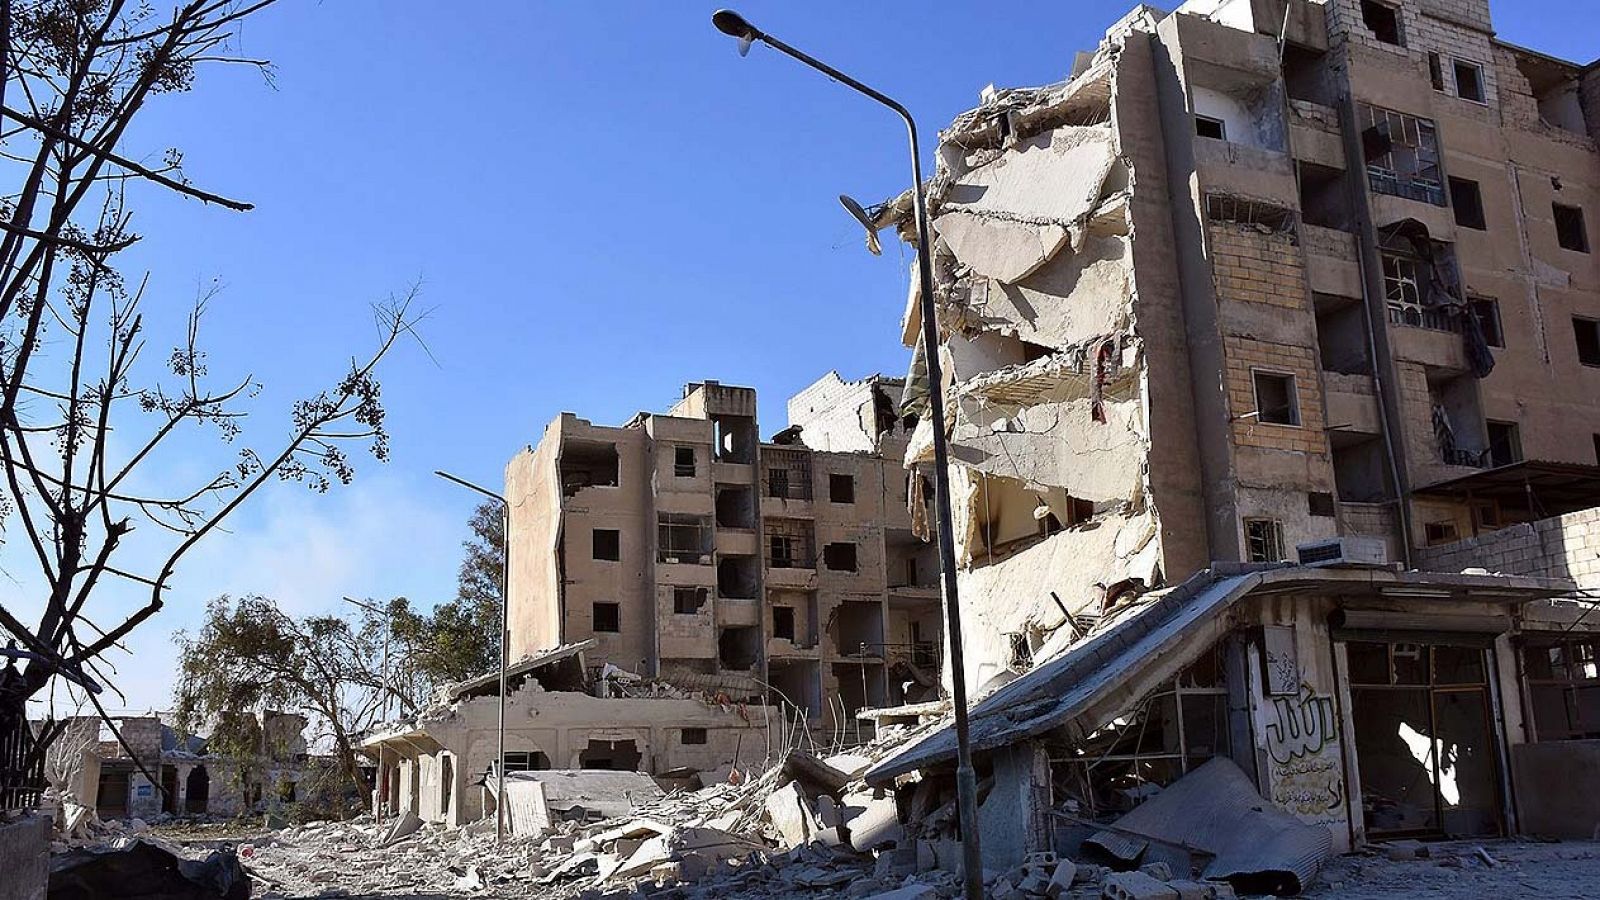 Imagen facilitada por la agencia oficial siria SANA de edificios dañados en el barrio de Masaken Hanano, en Alepo, el 27 de diciembre de 2016